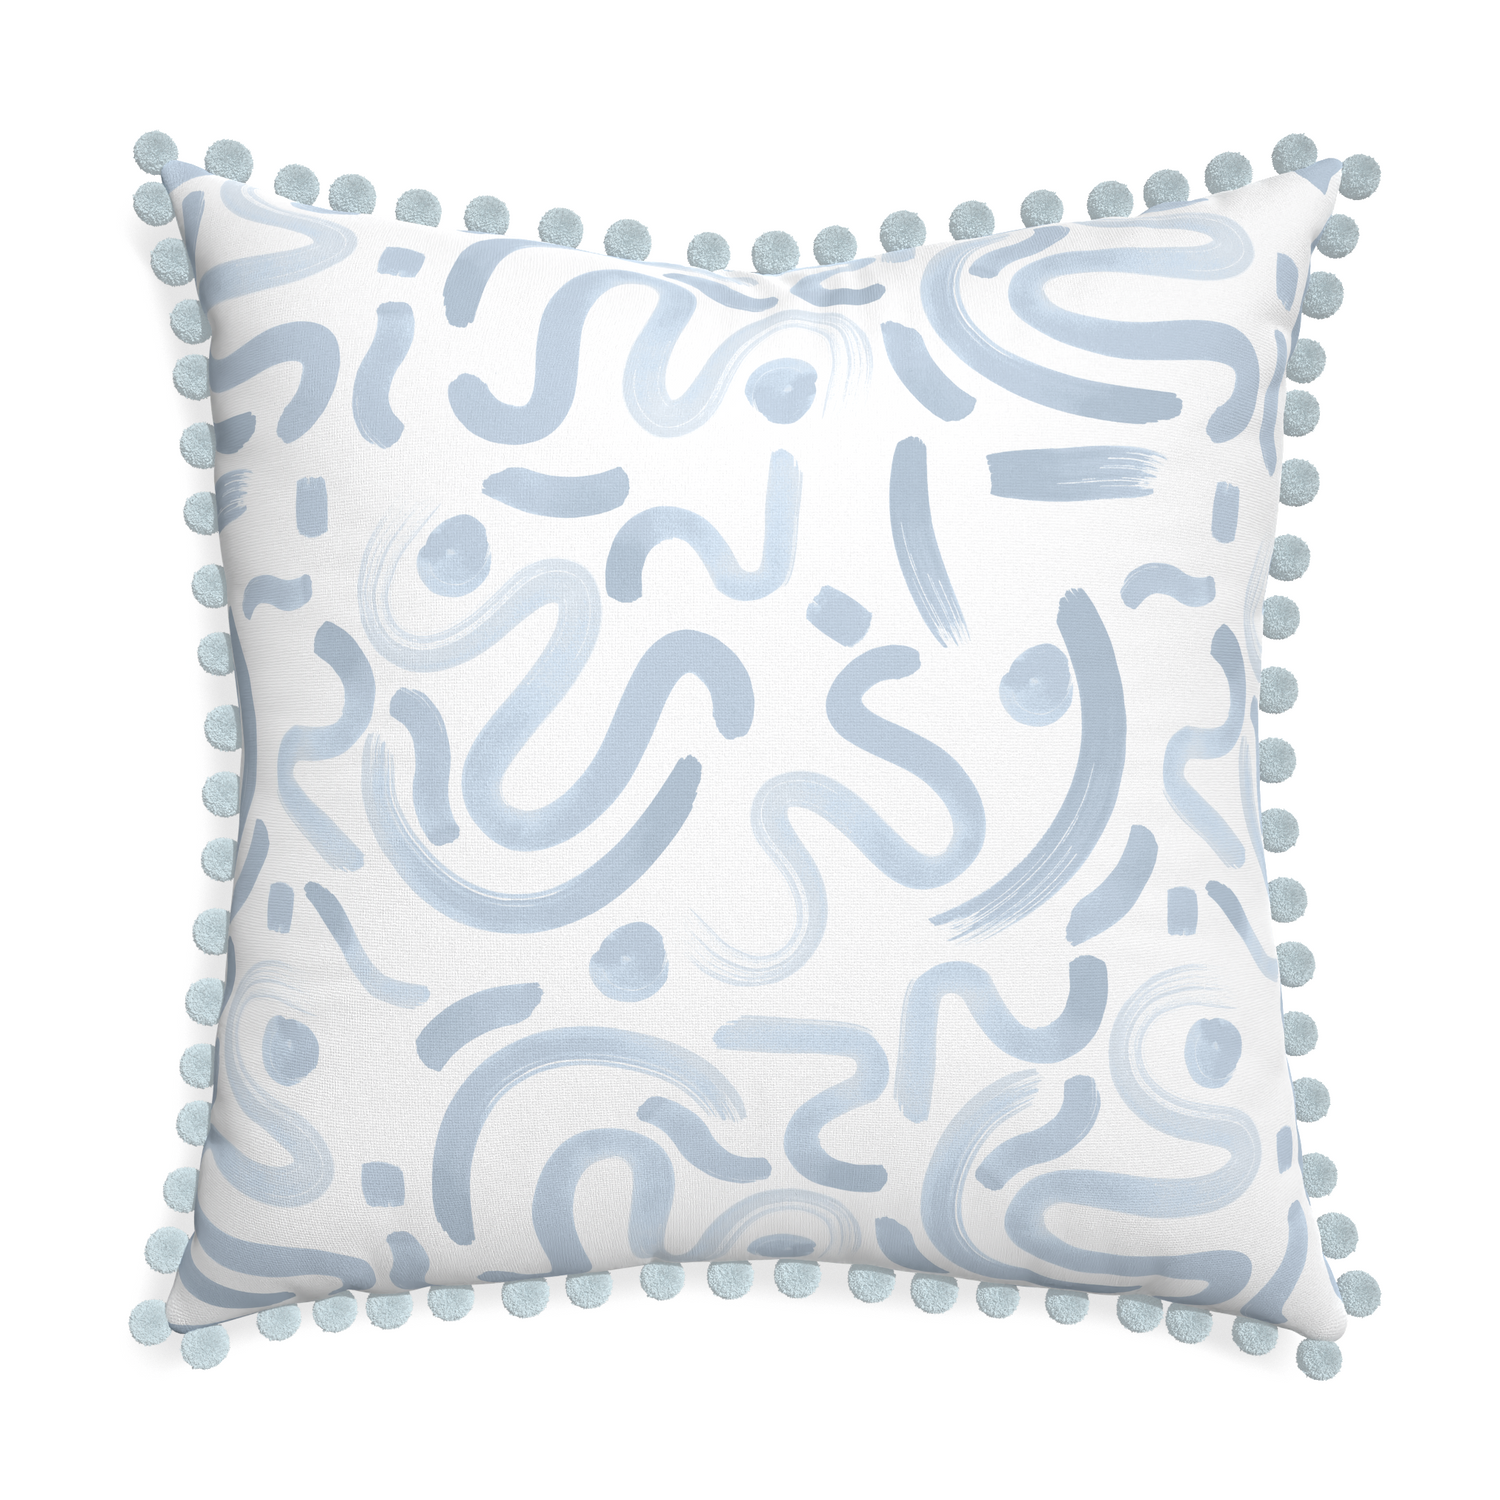 Euro-sham hockney sky custom pillow with powder pom pom on white background